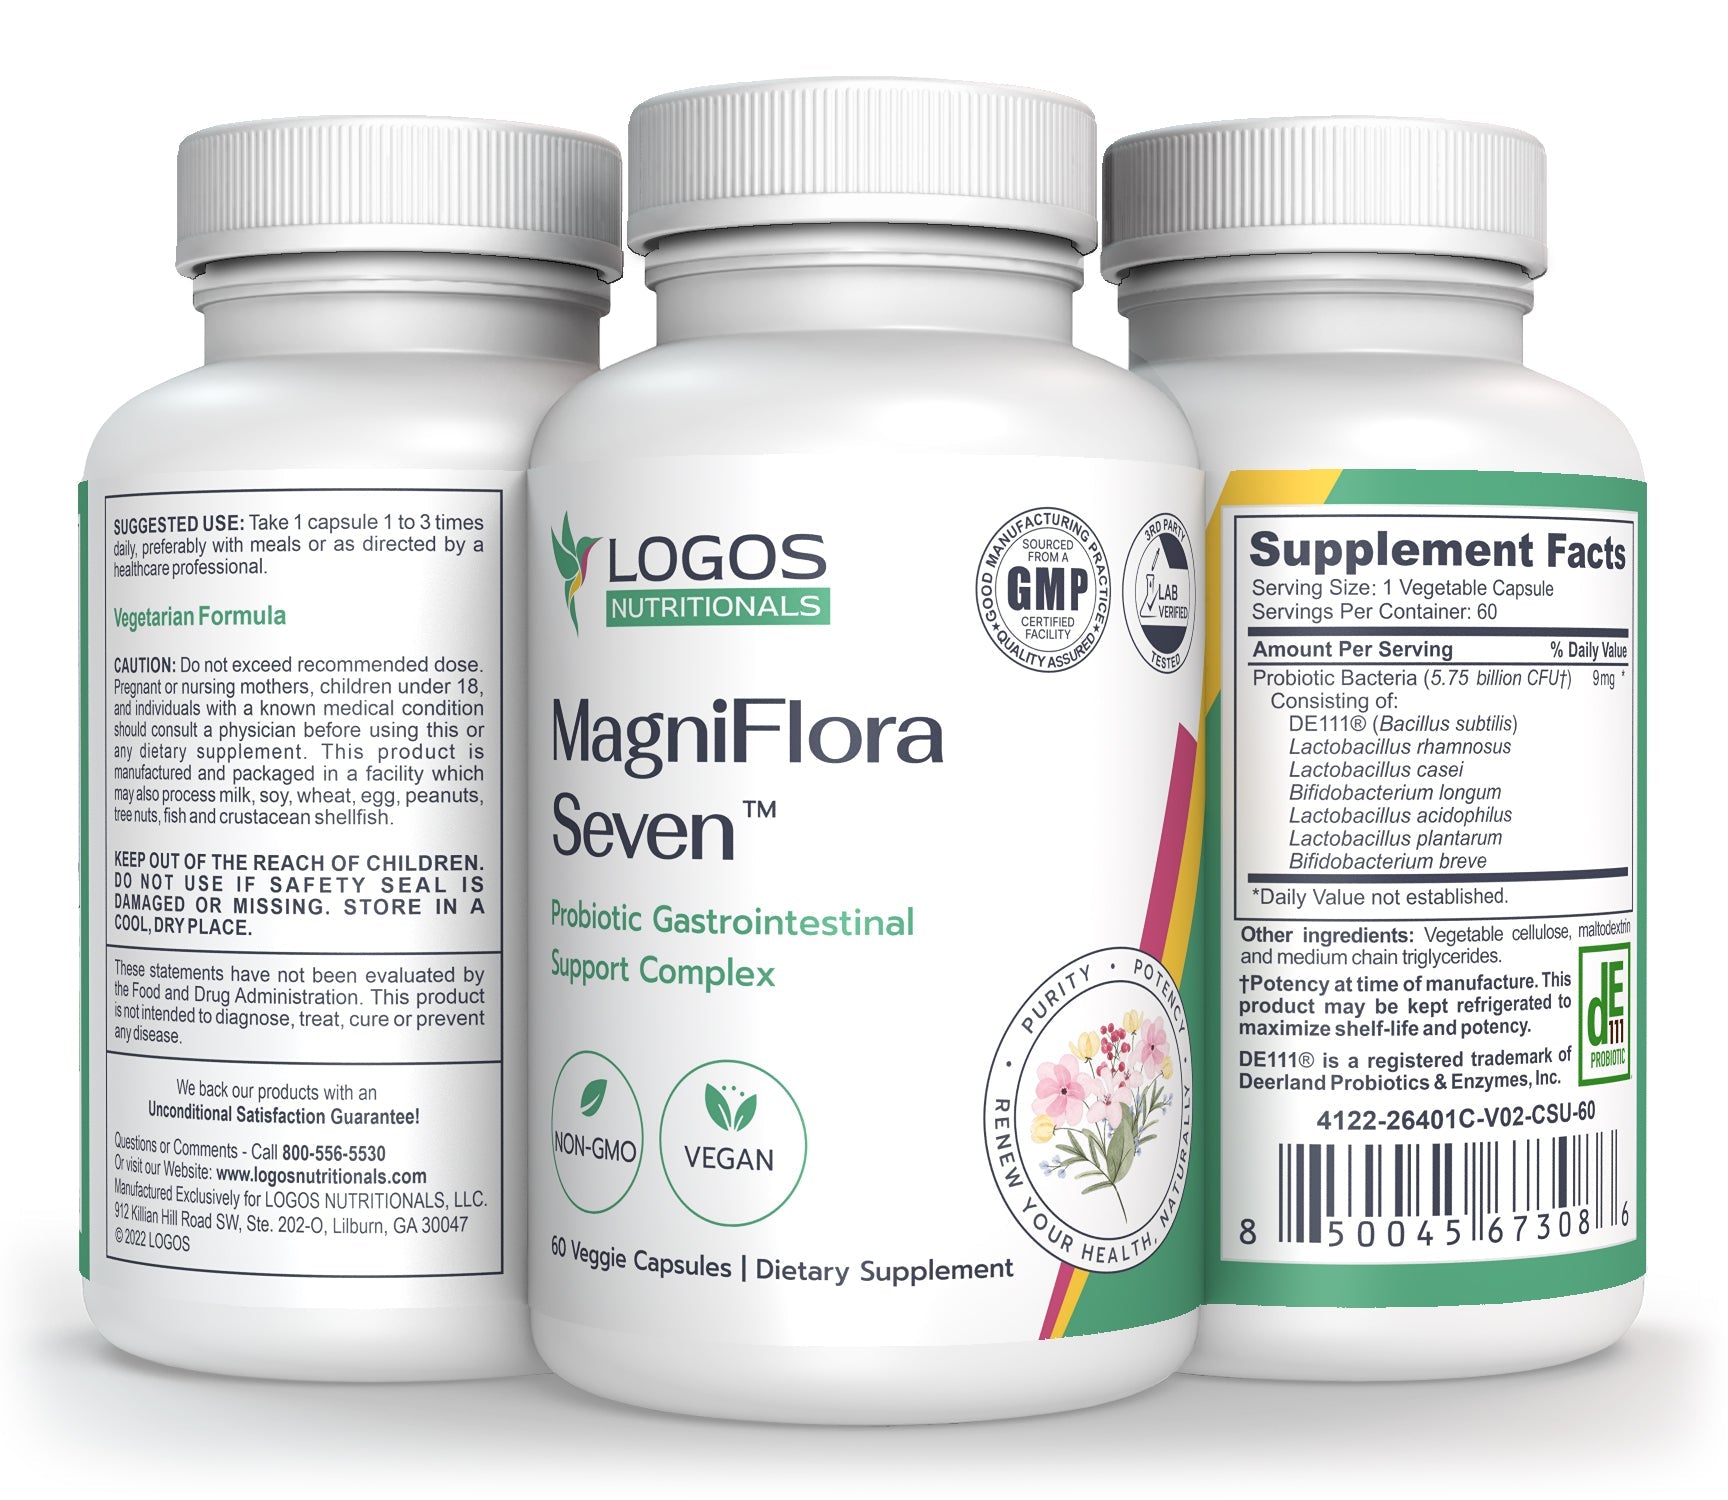 Logos Nutritionals_MagniFlora Seven